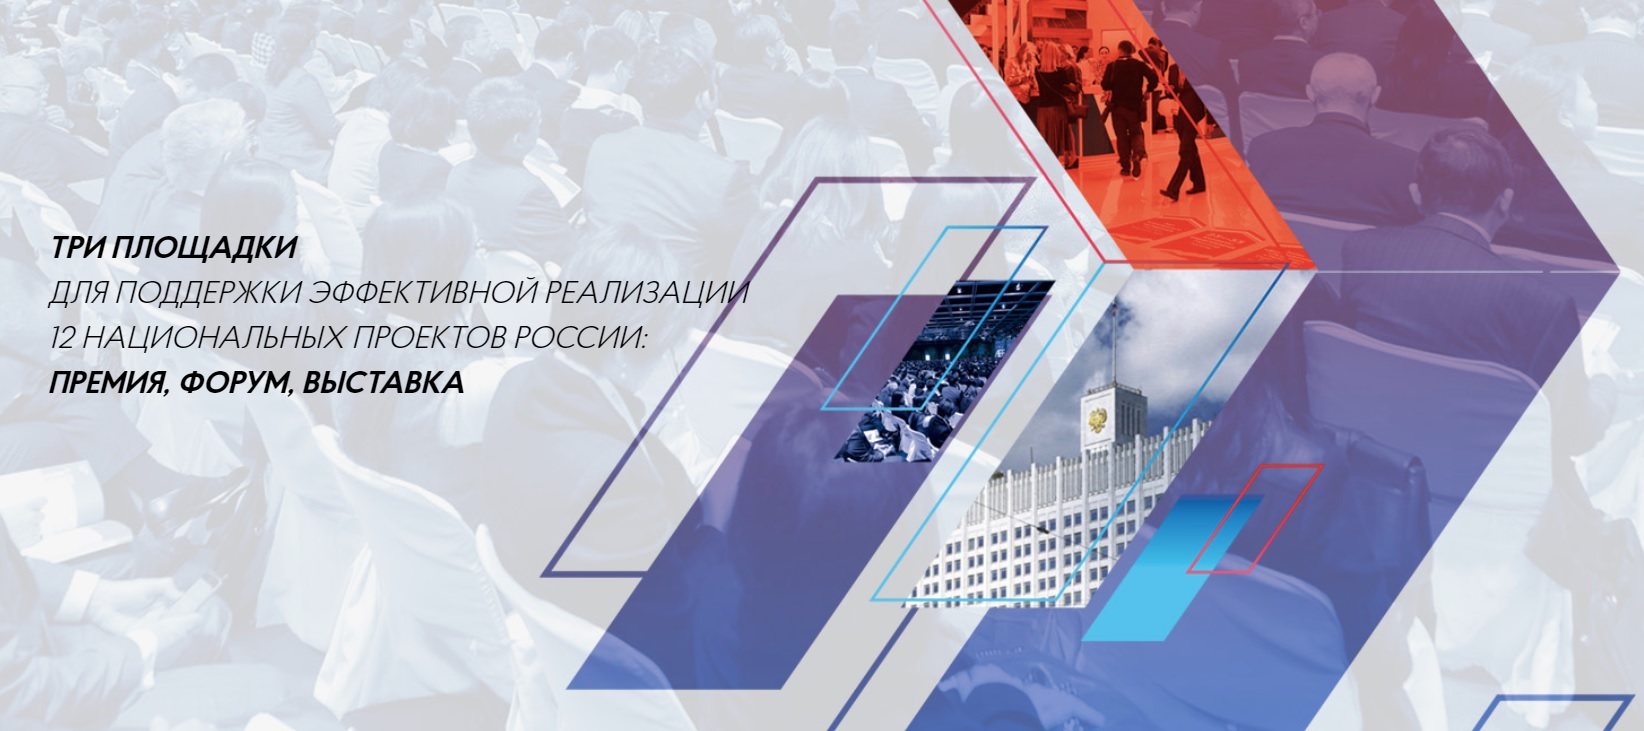 Новость проекта. Интернет-сервис STQR.ru примет участие в конкурсе Проектный лидер в номинации Лидер малого бизнеса